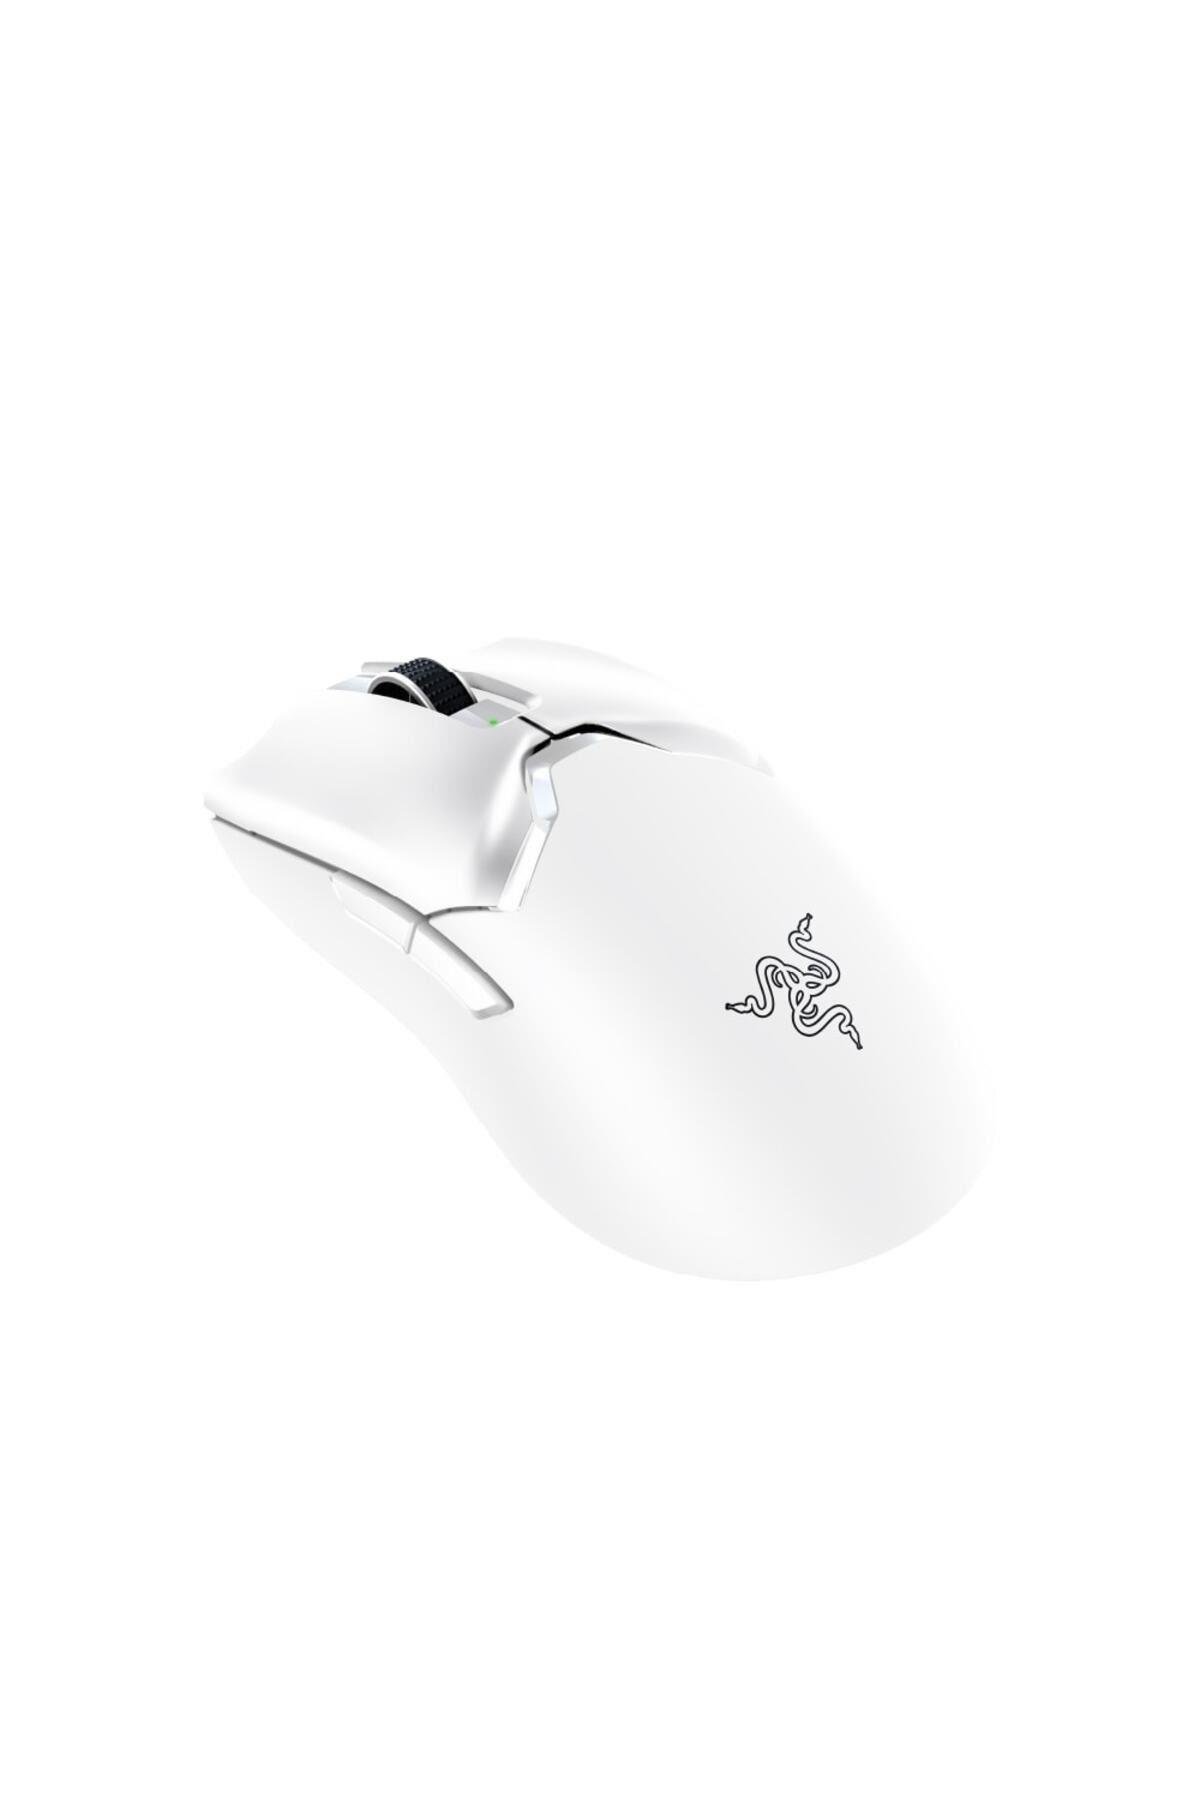 Razer Viper V2 Pro - Ultralight Beyaz Kablosuz Gaming Mouse  RZ01-04390200-R3G1